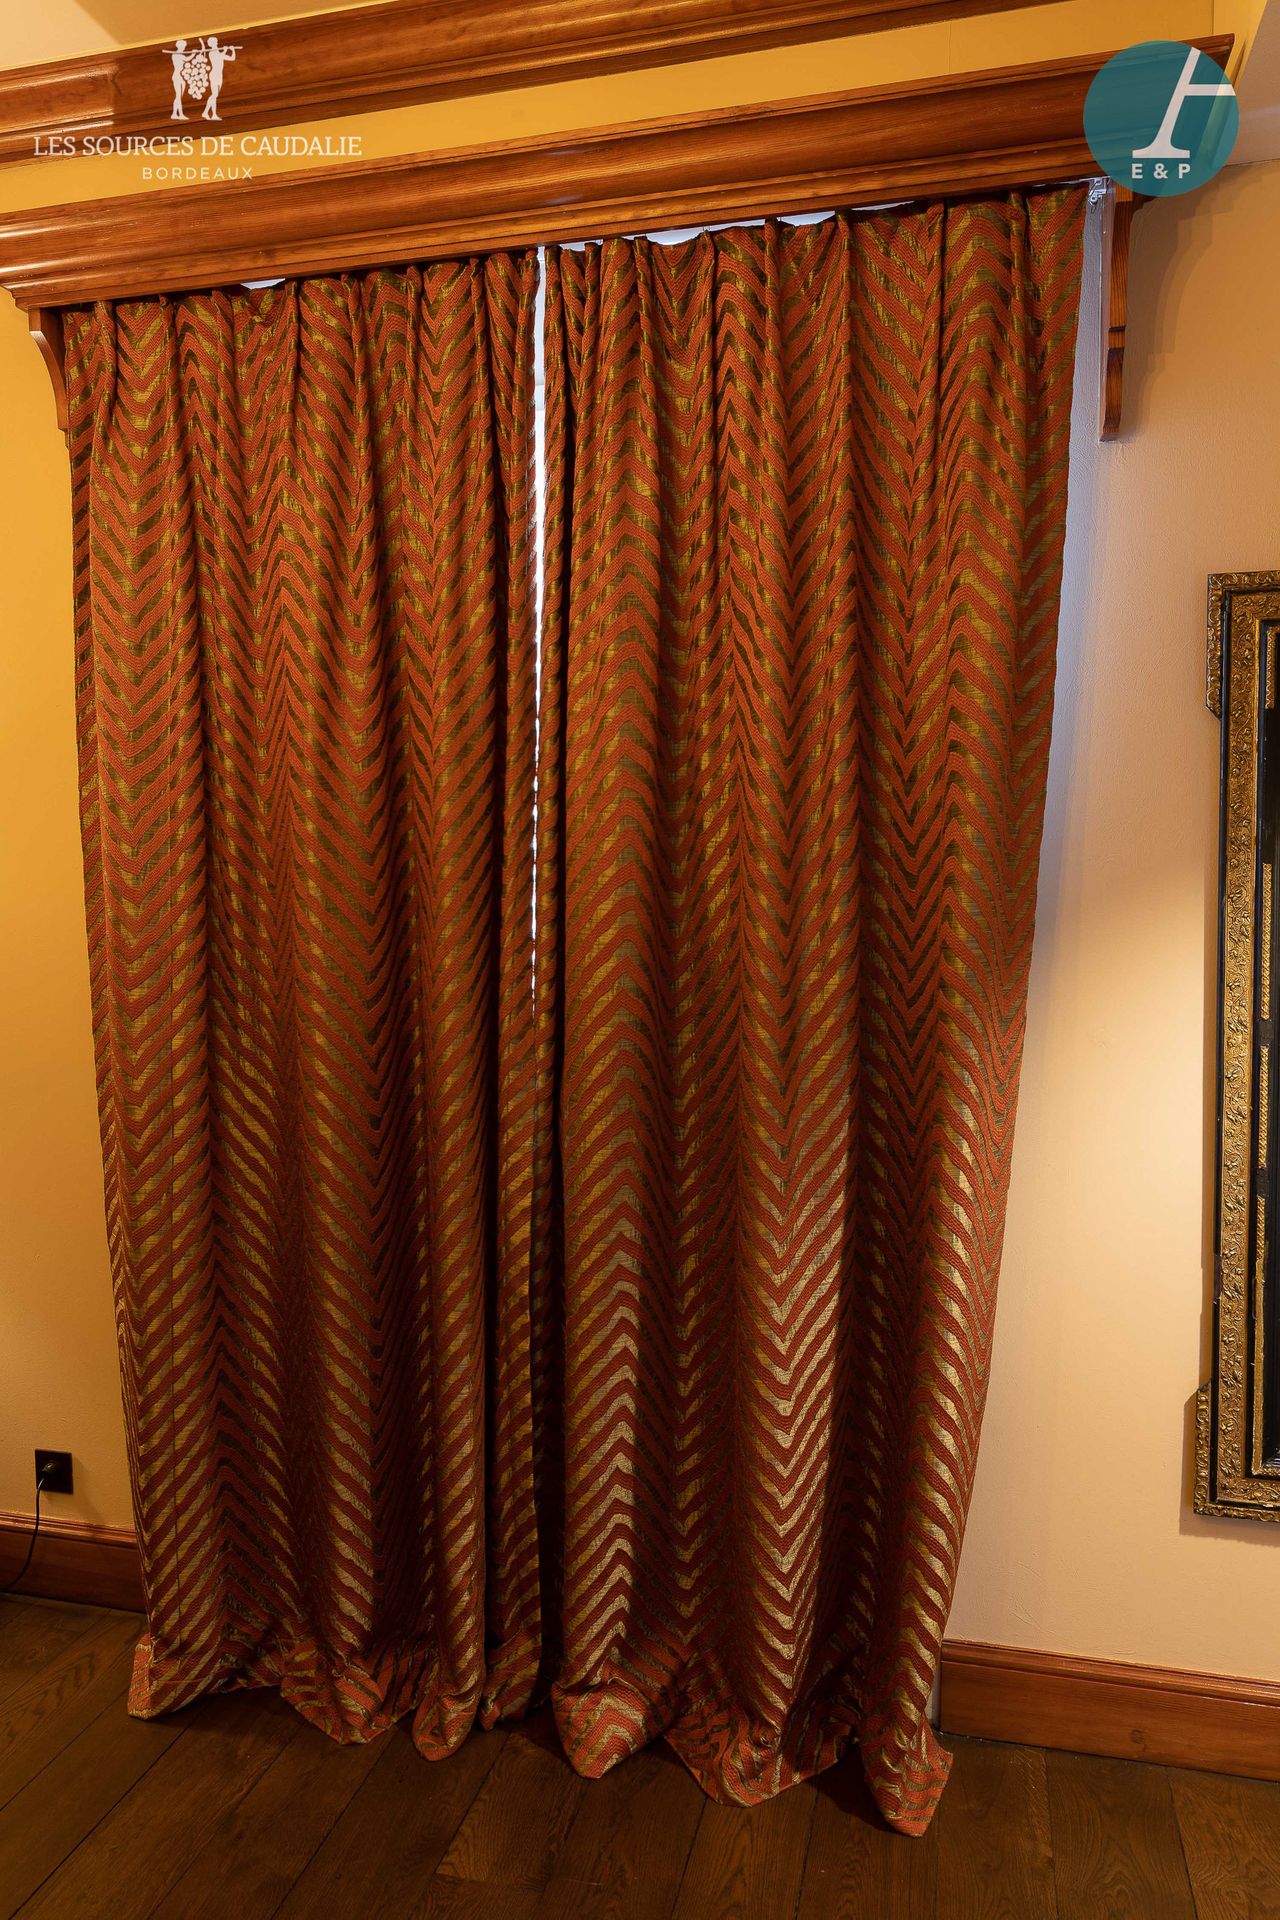 Null 来自14号房间的 "托马斯-杰斐逊"。

两副窗帘，以及它们的遮光衬垫。

高：280厘米 - 宽：100厘米（面板，x4）。